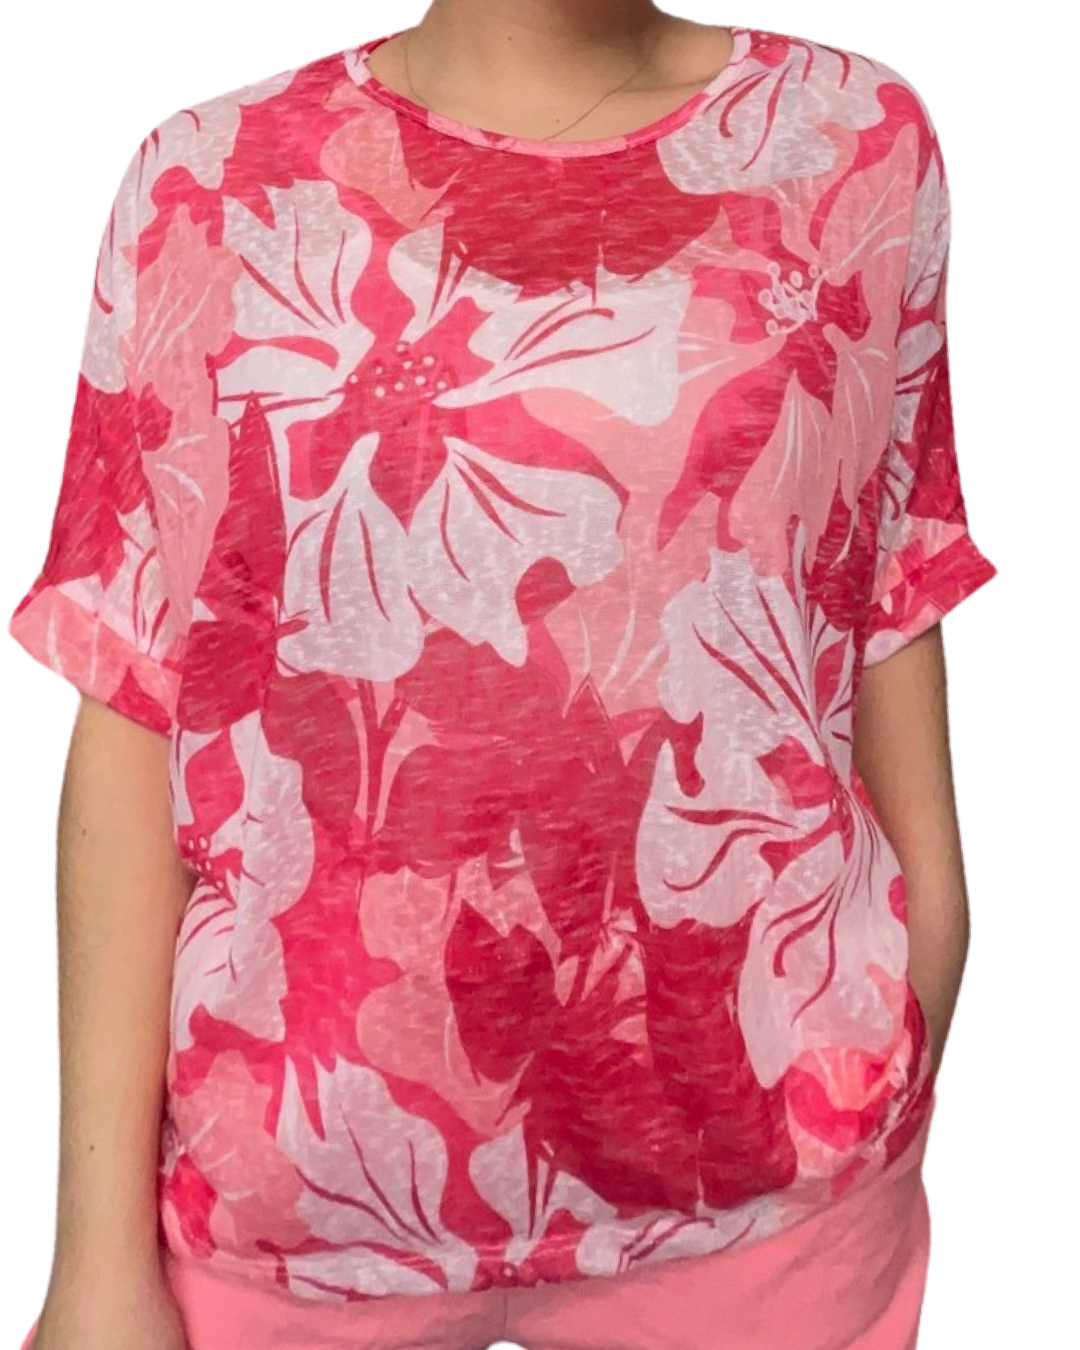 T-shirt femme imprimé de fleurs corail et rose 